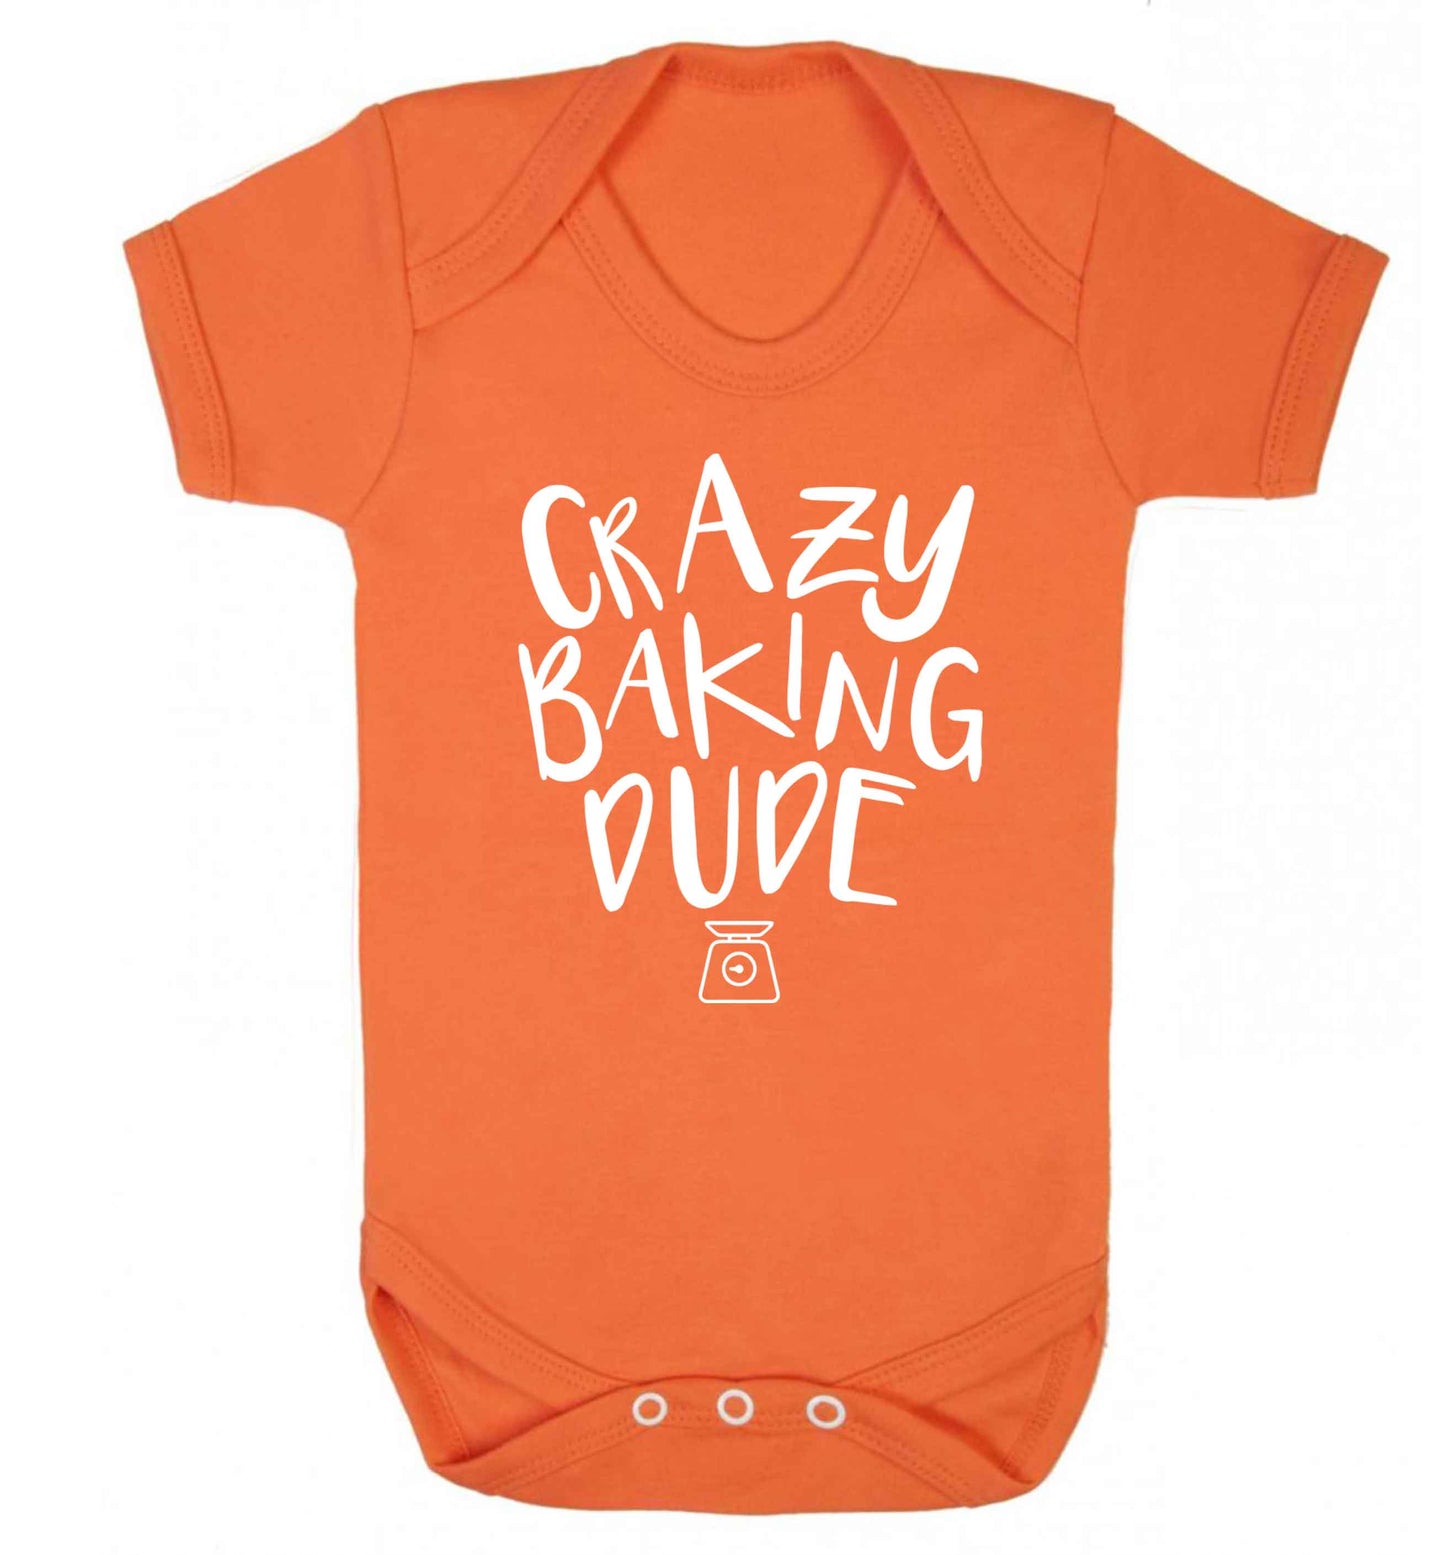 Crazy baking dude Baby Vest orange 18-24 months